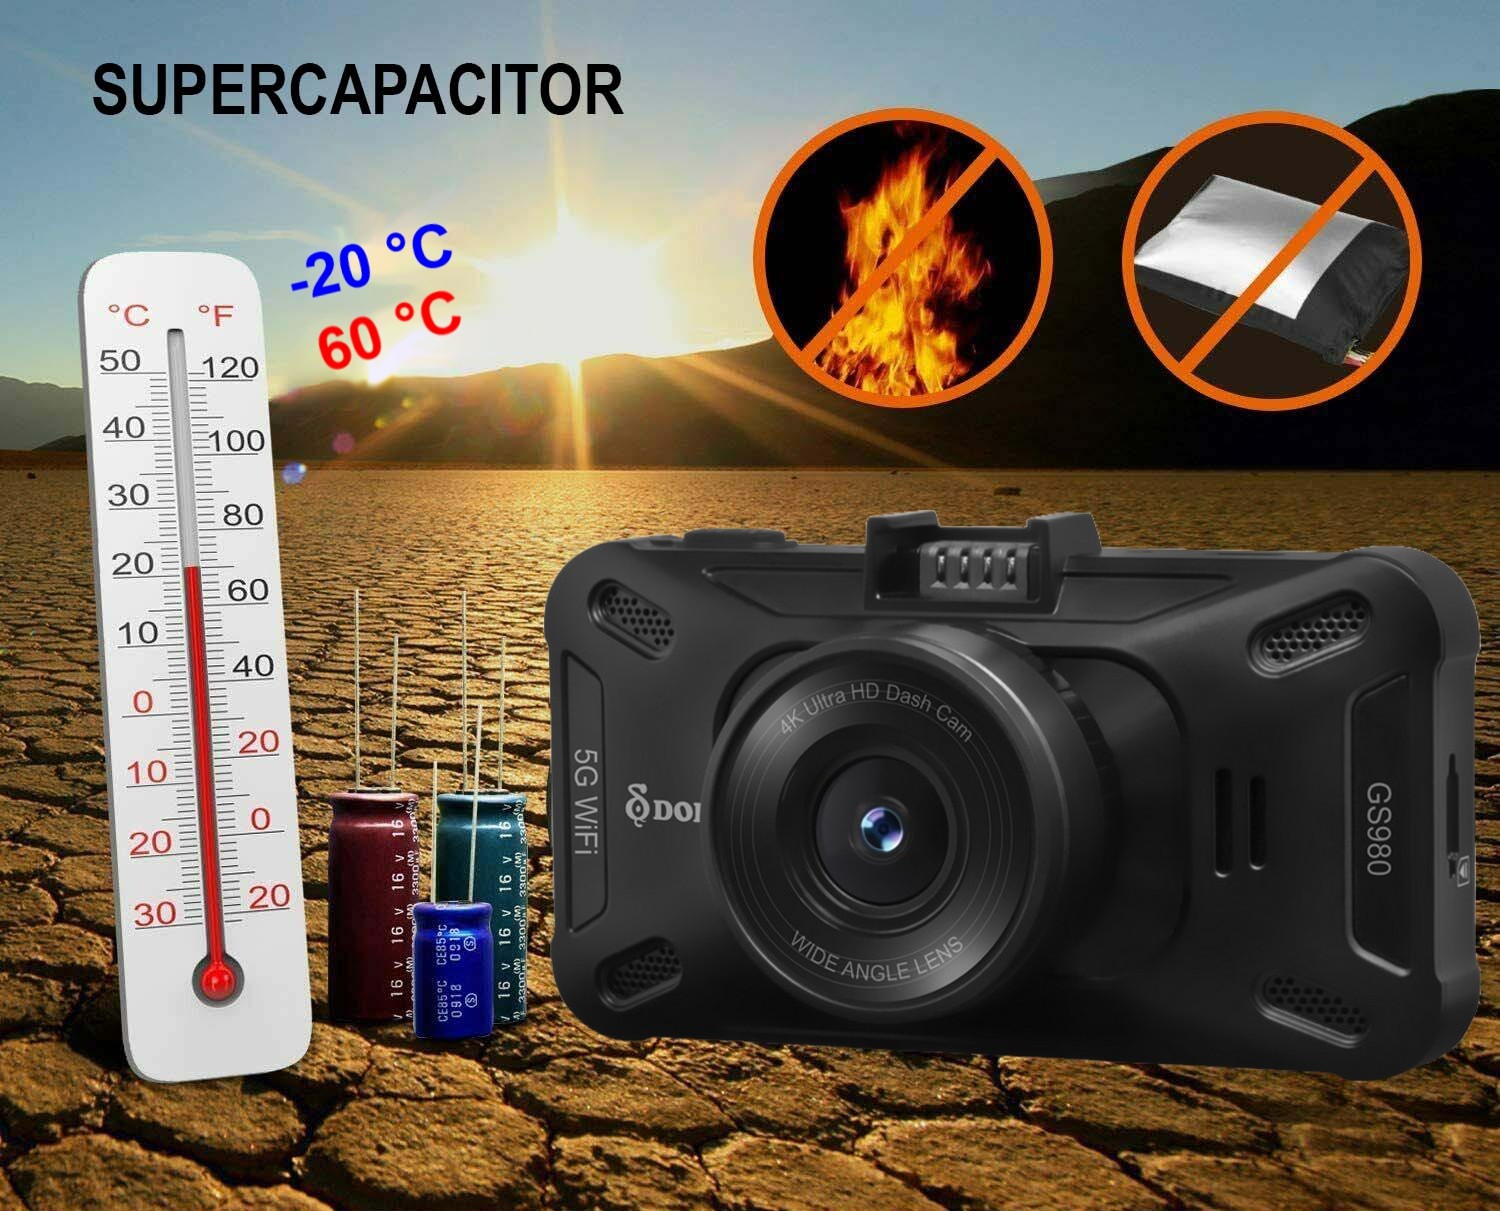 super capacitor - dod car camera GS980D